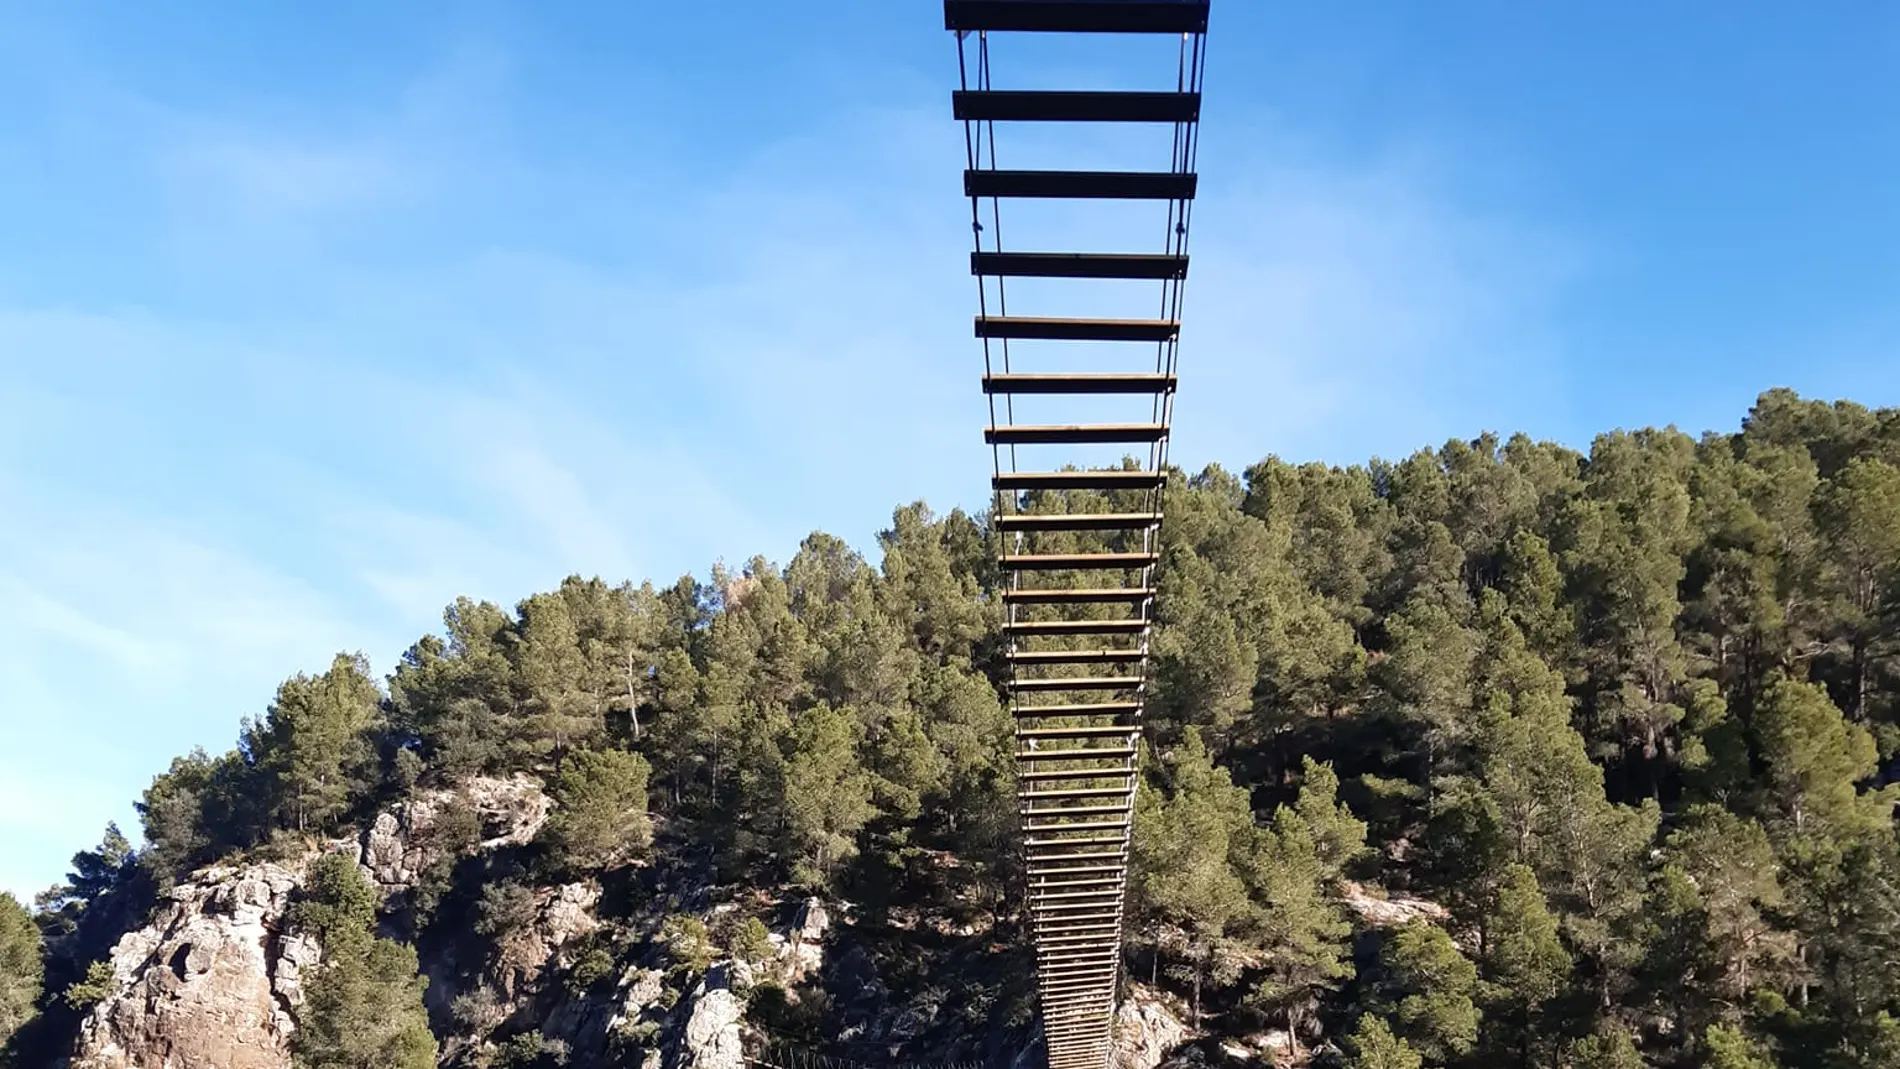 El segundo puente tibetano más largo de España está en un pueblo valenciano